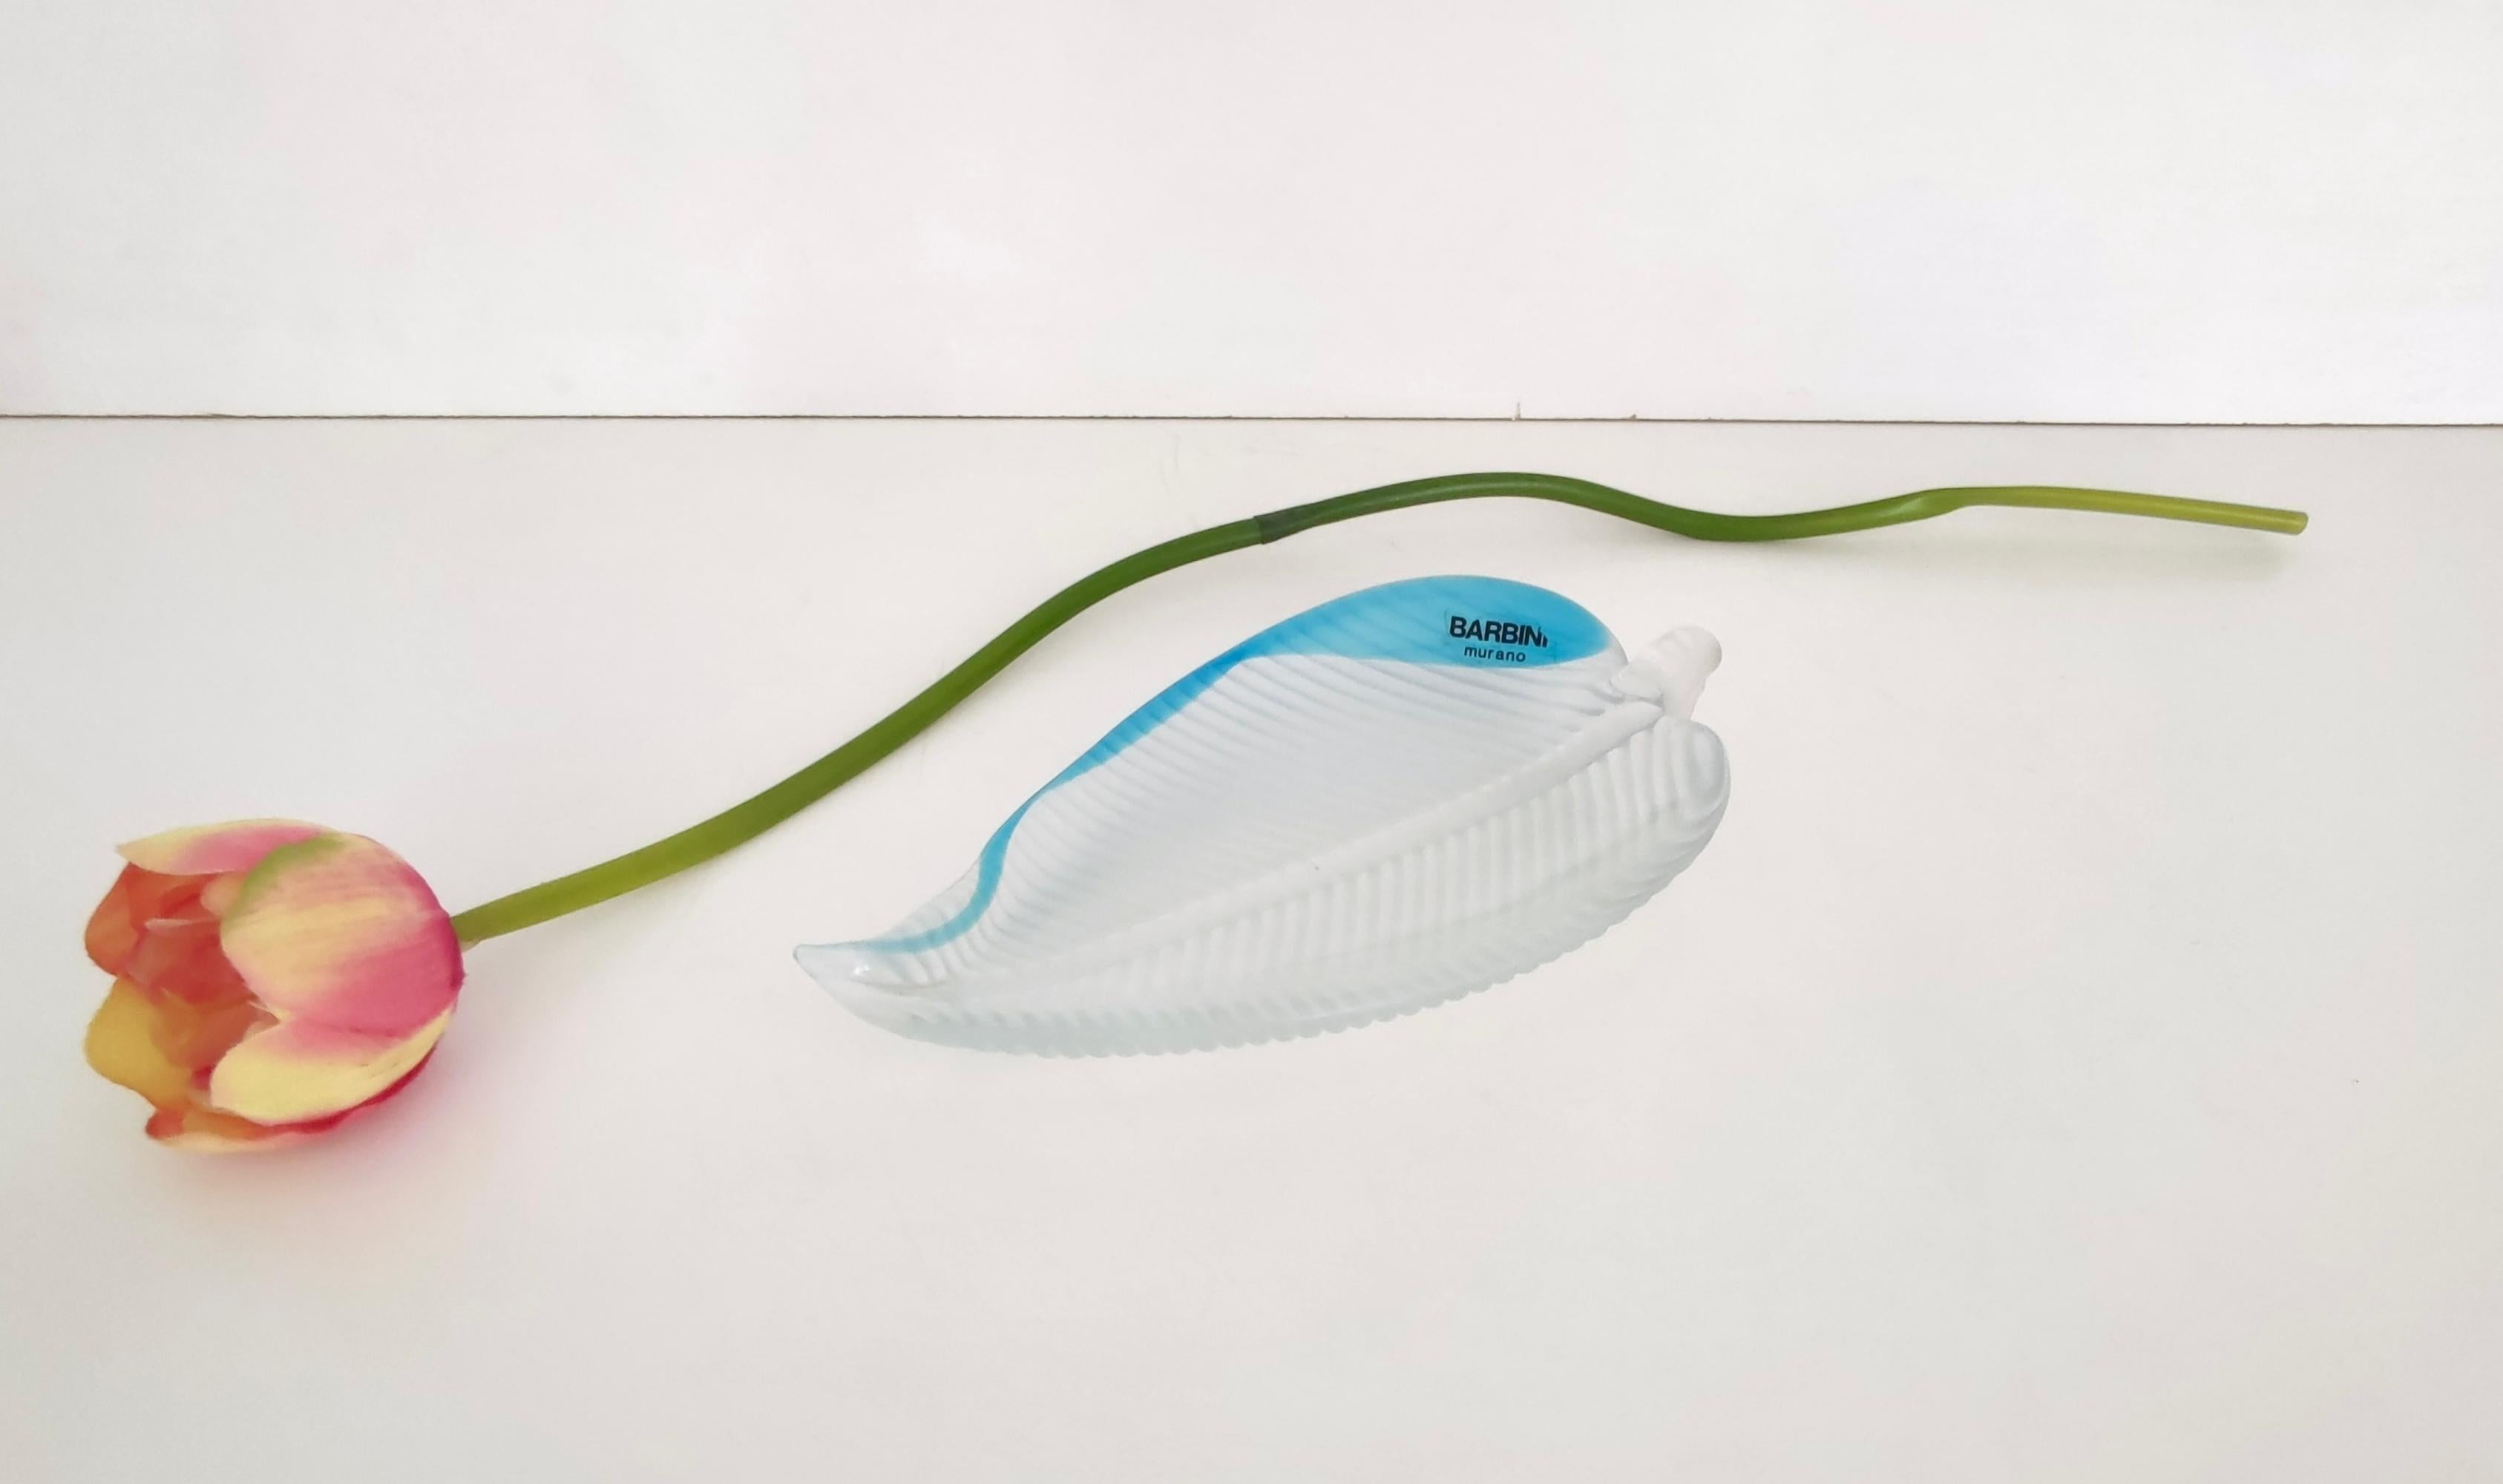 Fabriqué en Italie, années 1970.
Ce vide-poche a été conçu par Alfredo Barbini et est réalisé en verre de Murano bleu clair et transparent, avec des lignes obtenues à partir d'un moule puis modelées à la main.
La partie inférieure est gravée, tandis